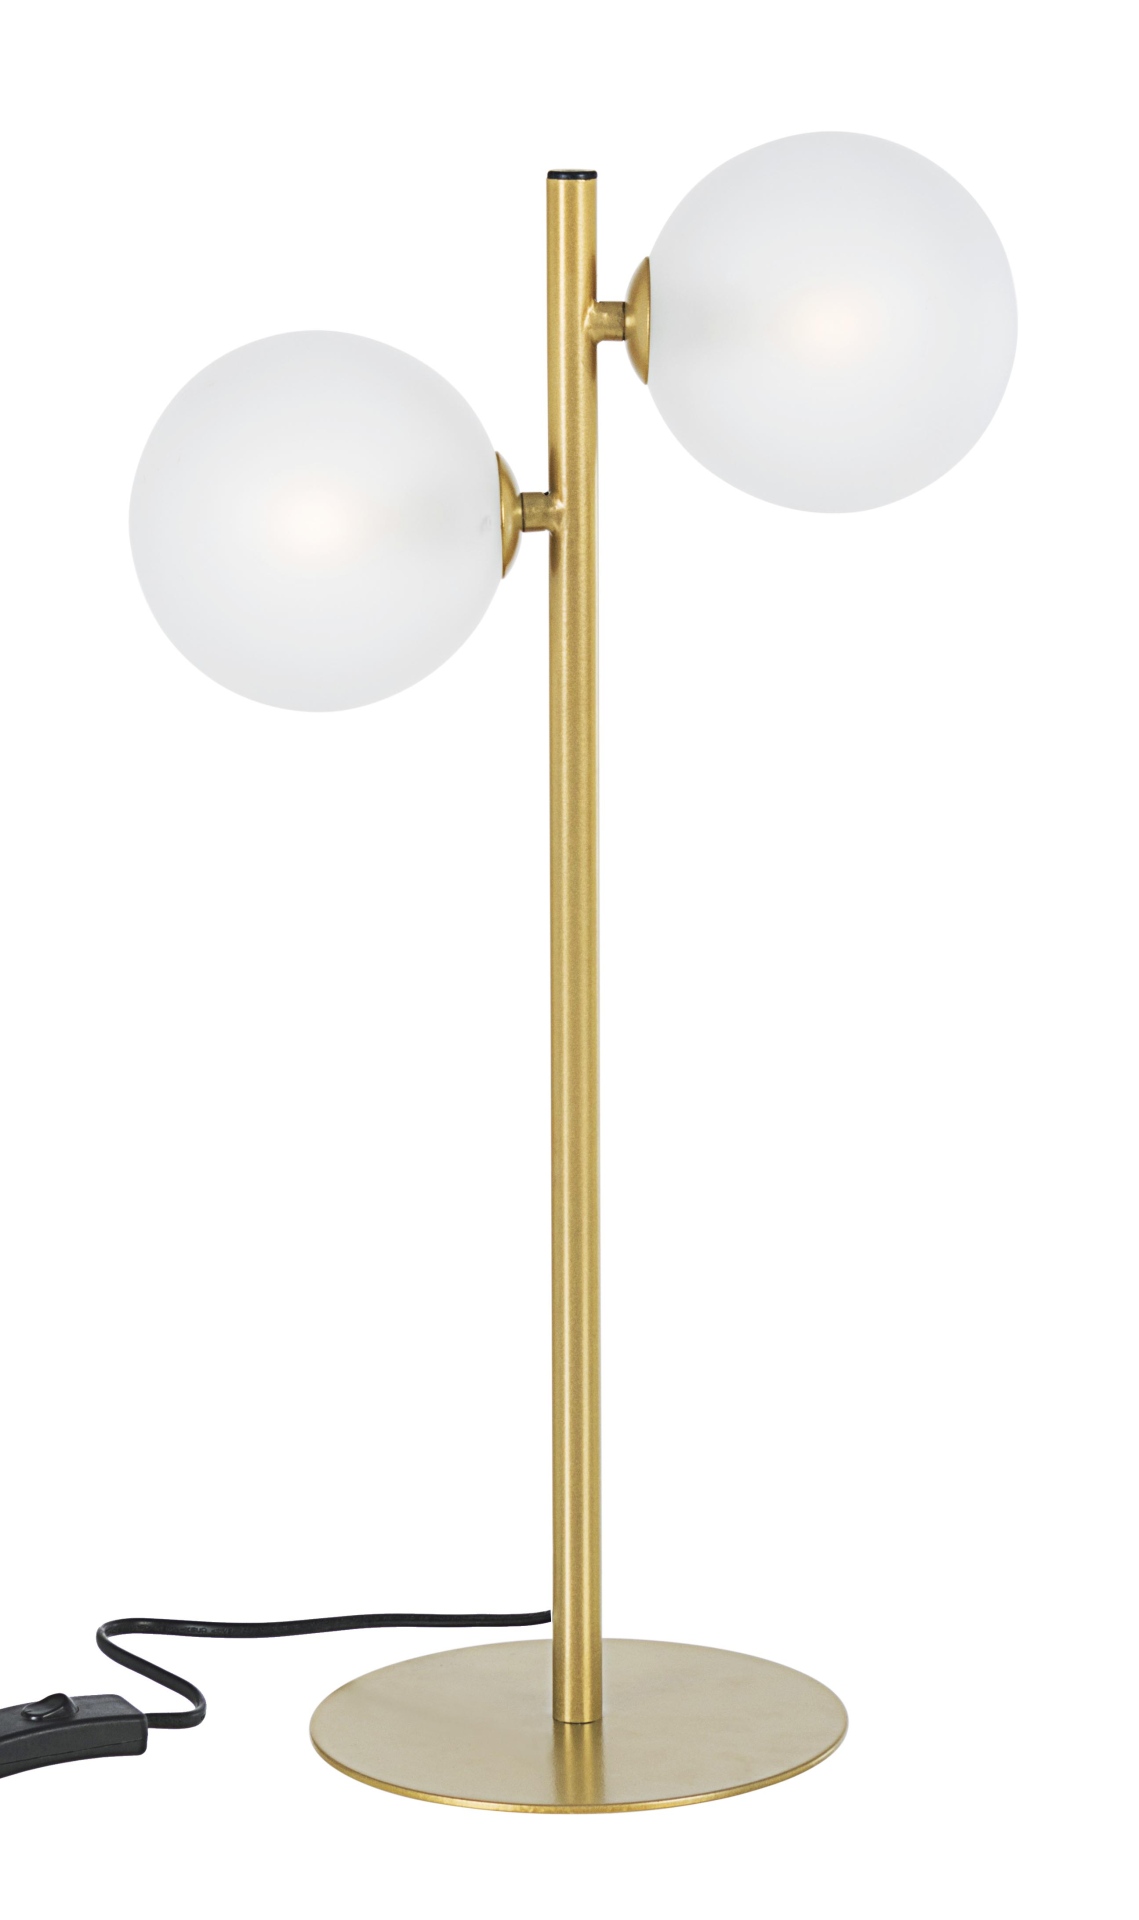 Die Tischleuchte Balls überzeugt mit ihrem modernen Design. Gefertigt wurde sie aus Metall, welches einen goldenen Farbton besitzt. Die Lichtquellen sind aus Milchglas. Die Lampe besitzt eine Höhe von 54 cm.